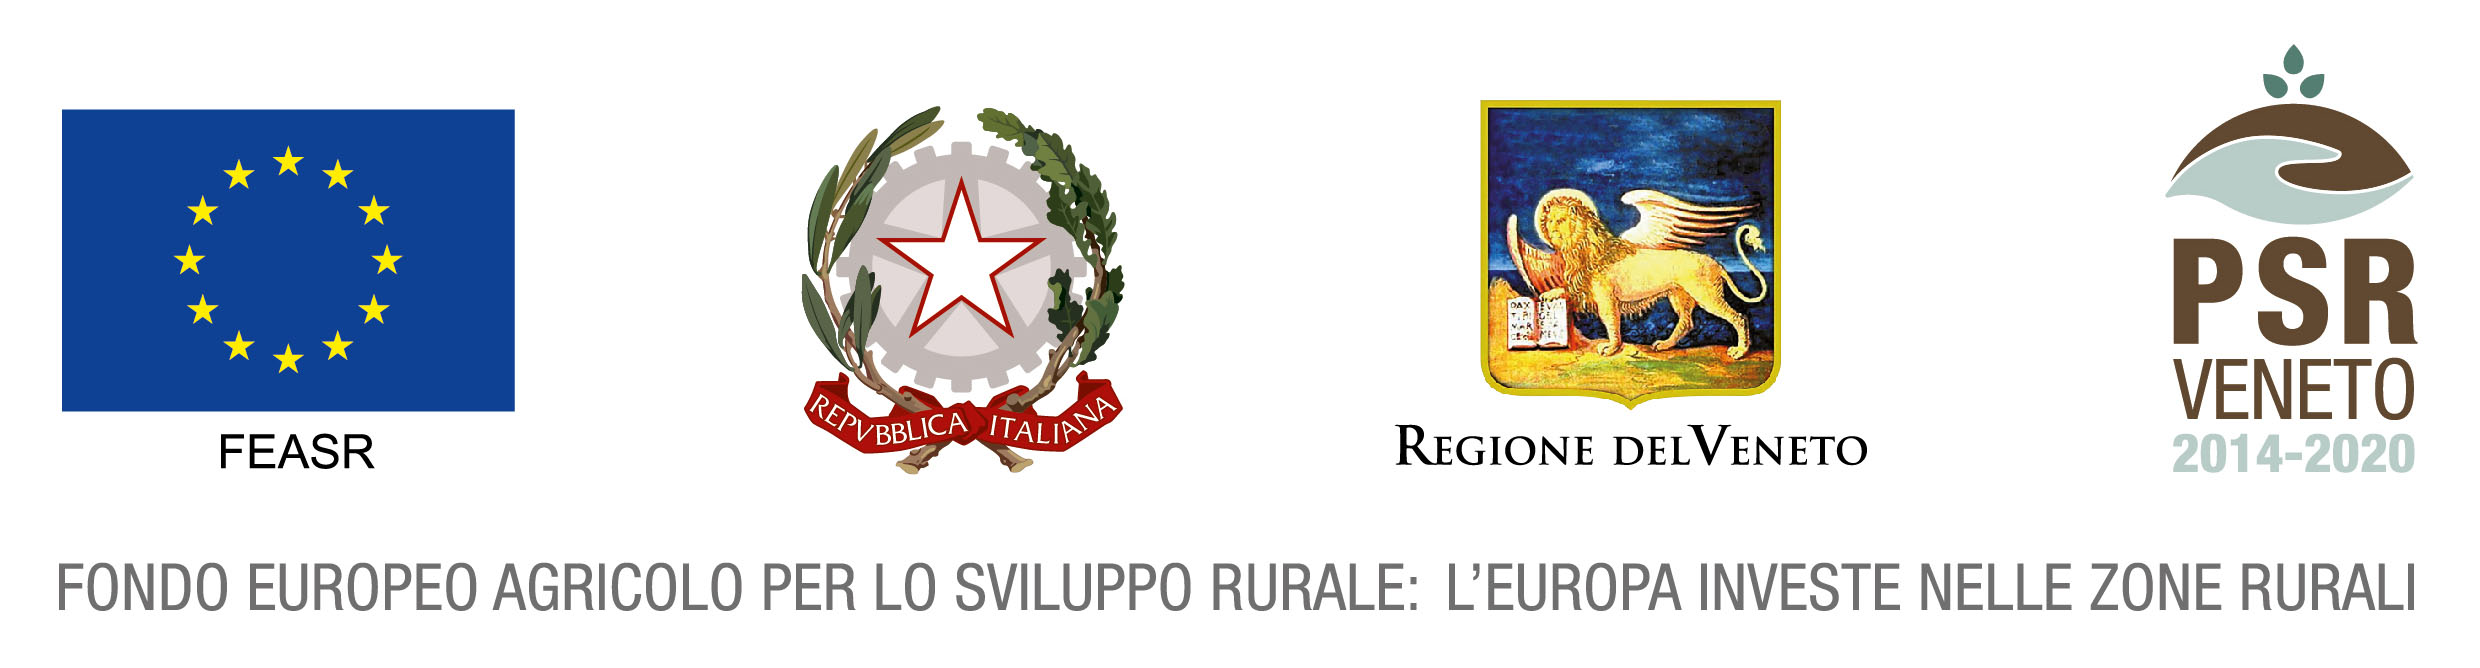 Istituzioni PSR Veneto 2014-2020